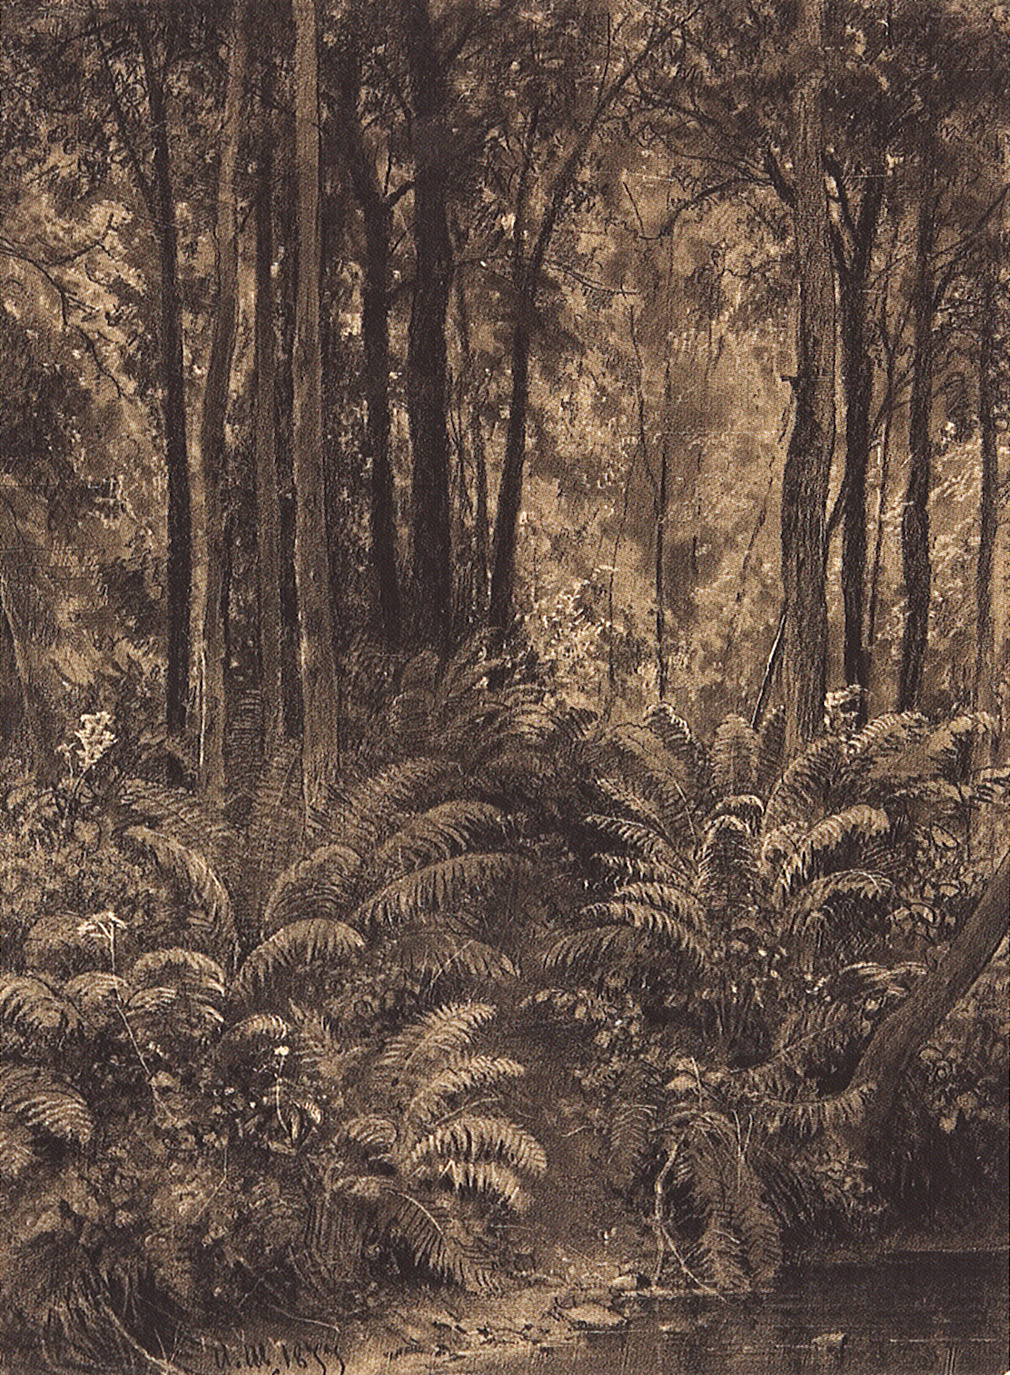 Шишкин. Папоротники в лесу. 1877